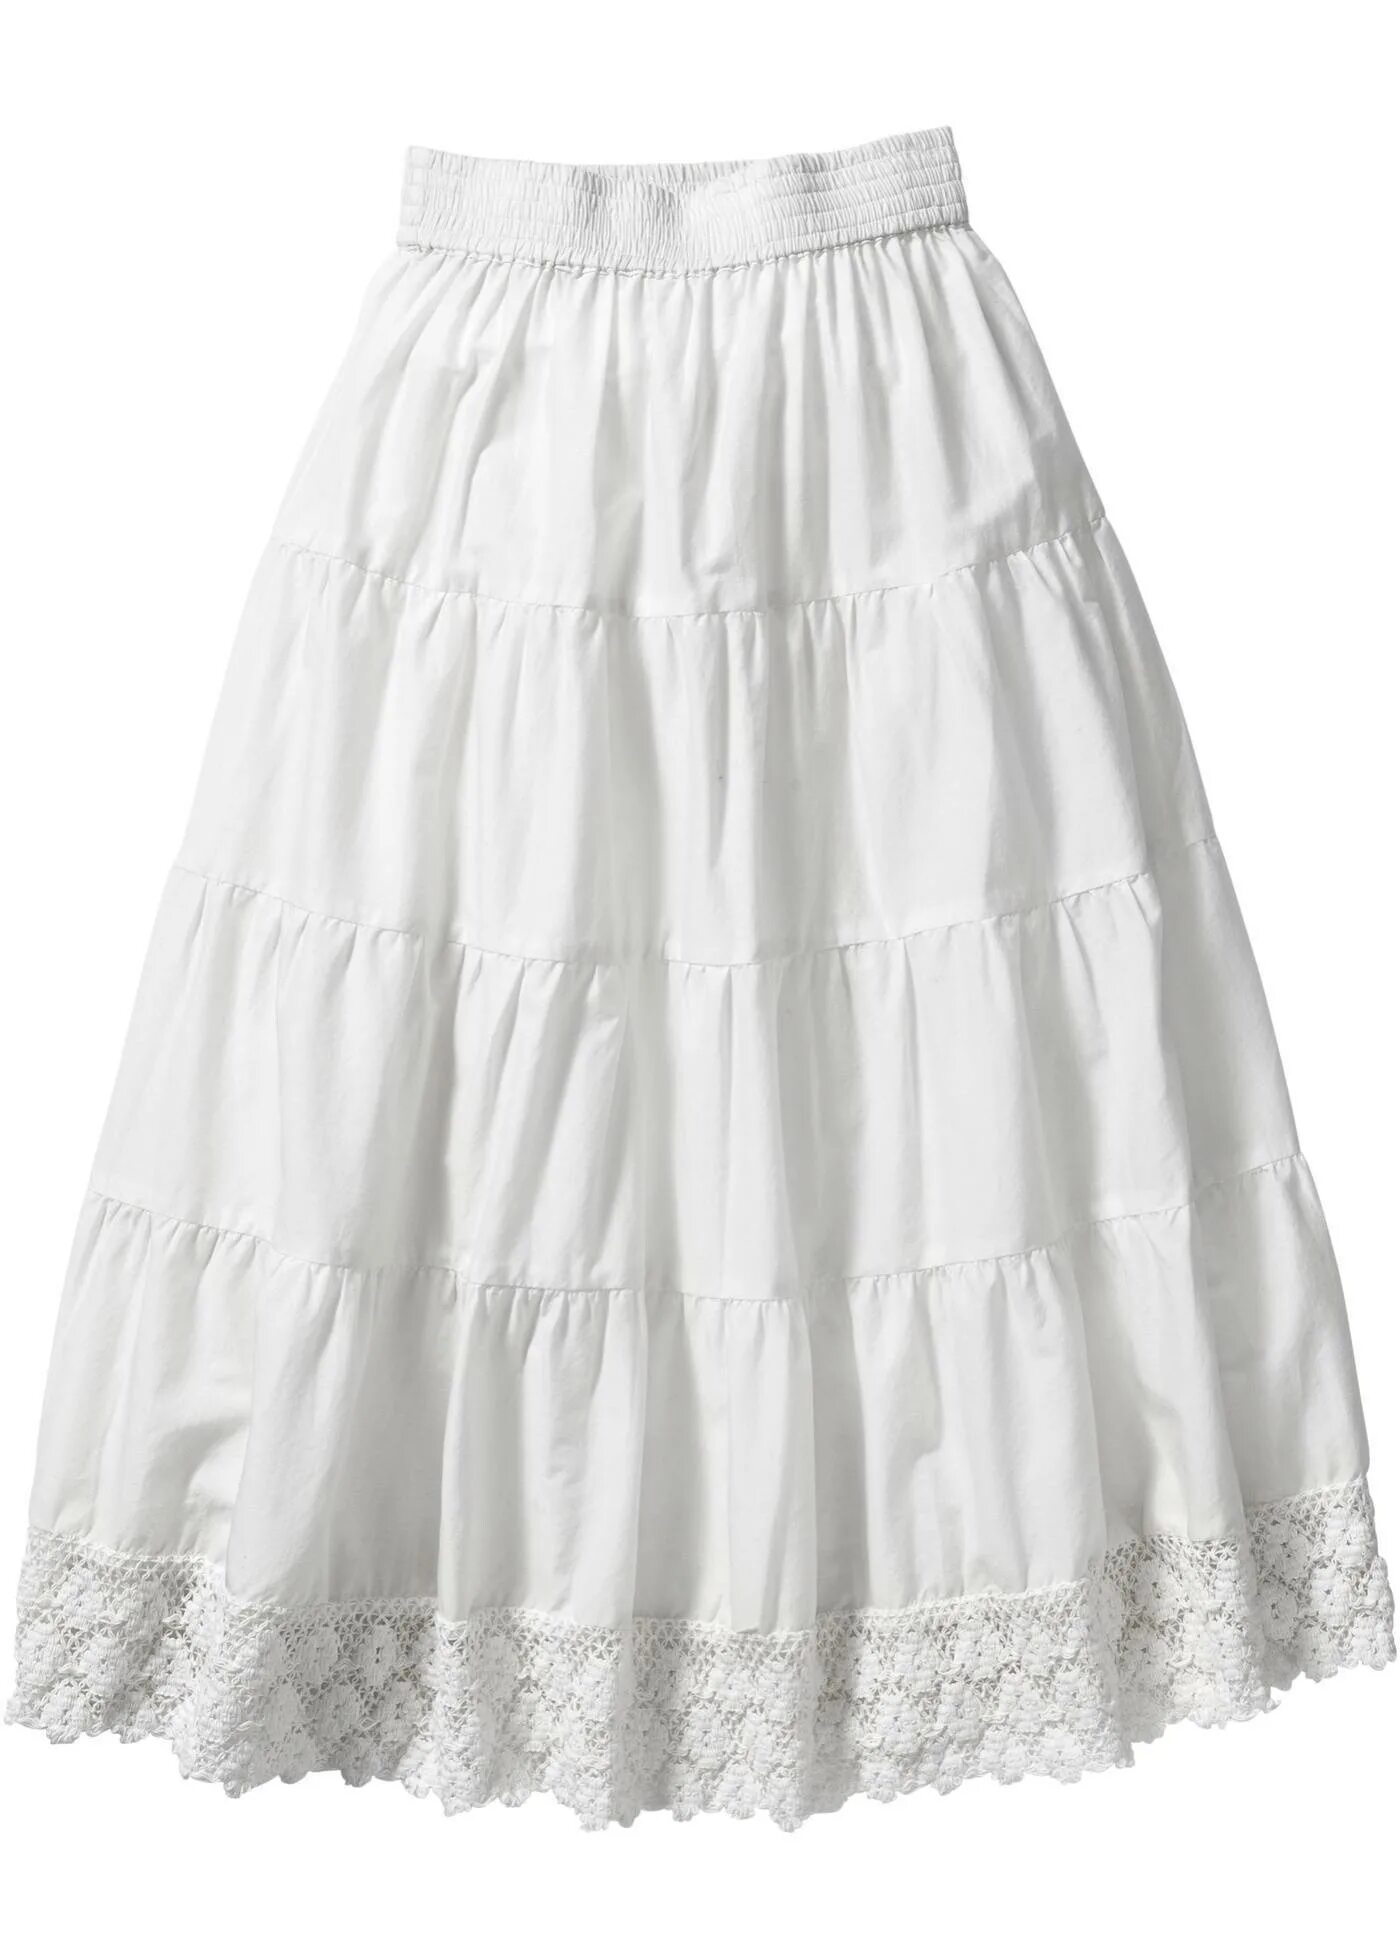 Белая юбка. Хлопчатобумажная юбка. Белая юбка для девочки. Белая летняя юбка. Купить юбку хлопок